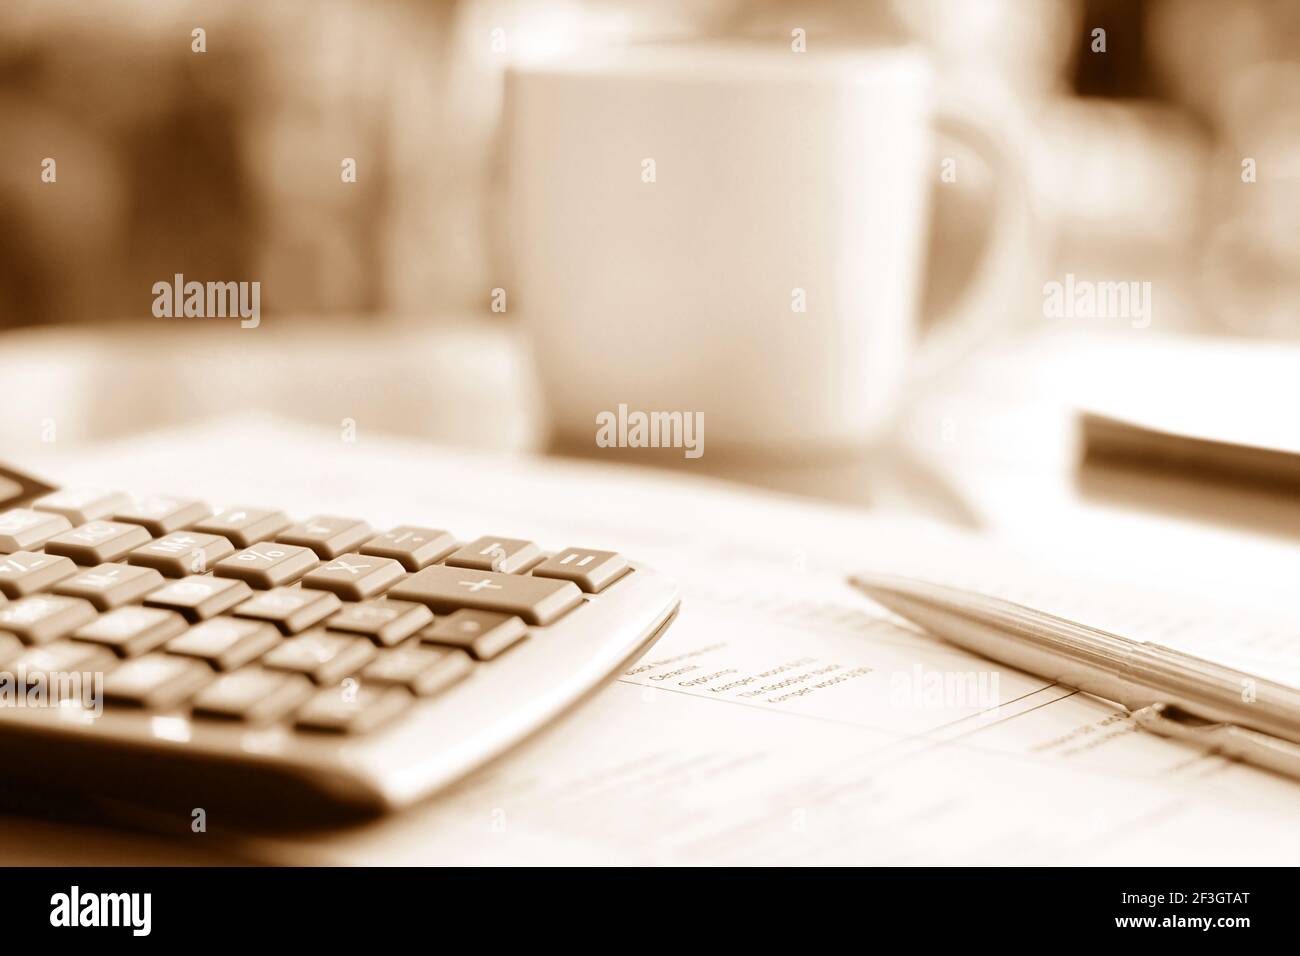 Calculatrice et stylo sur papier sur la table avec flou fond de tasse à café avec effet sépia marron - mise au point douce Banque D'Images